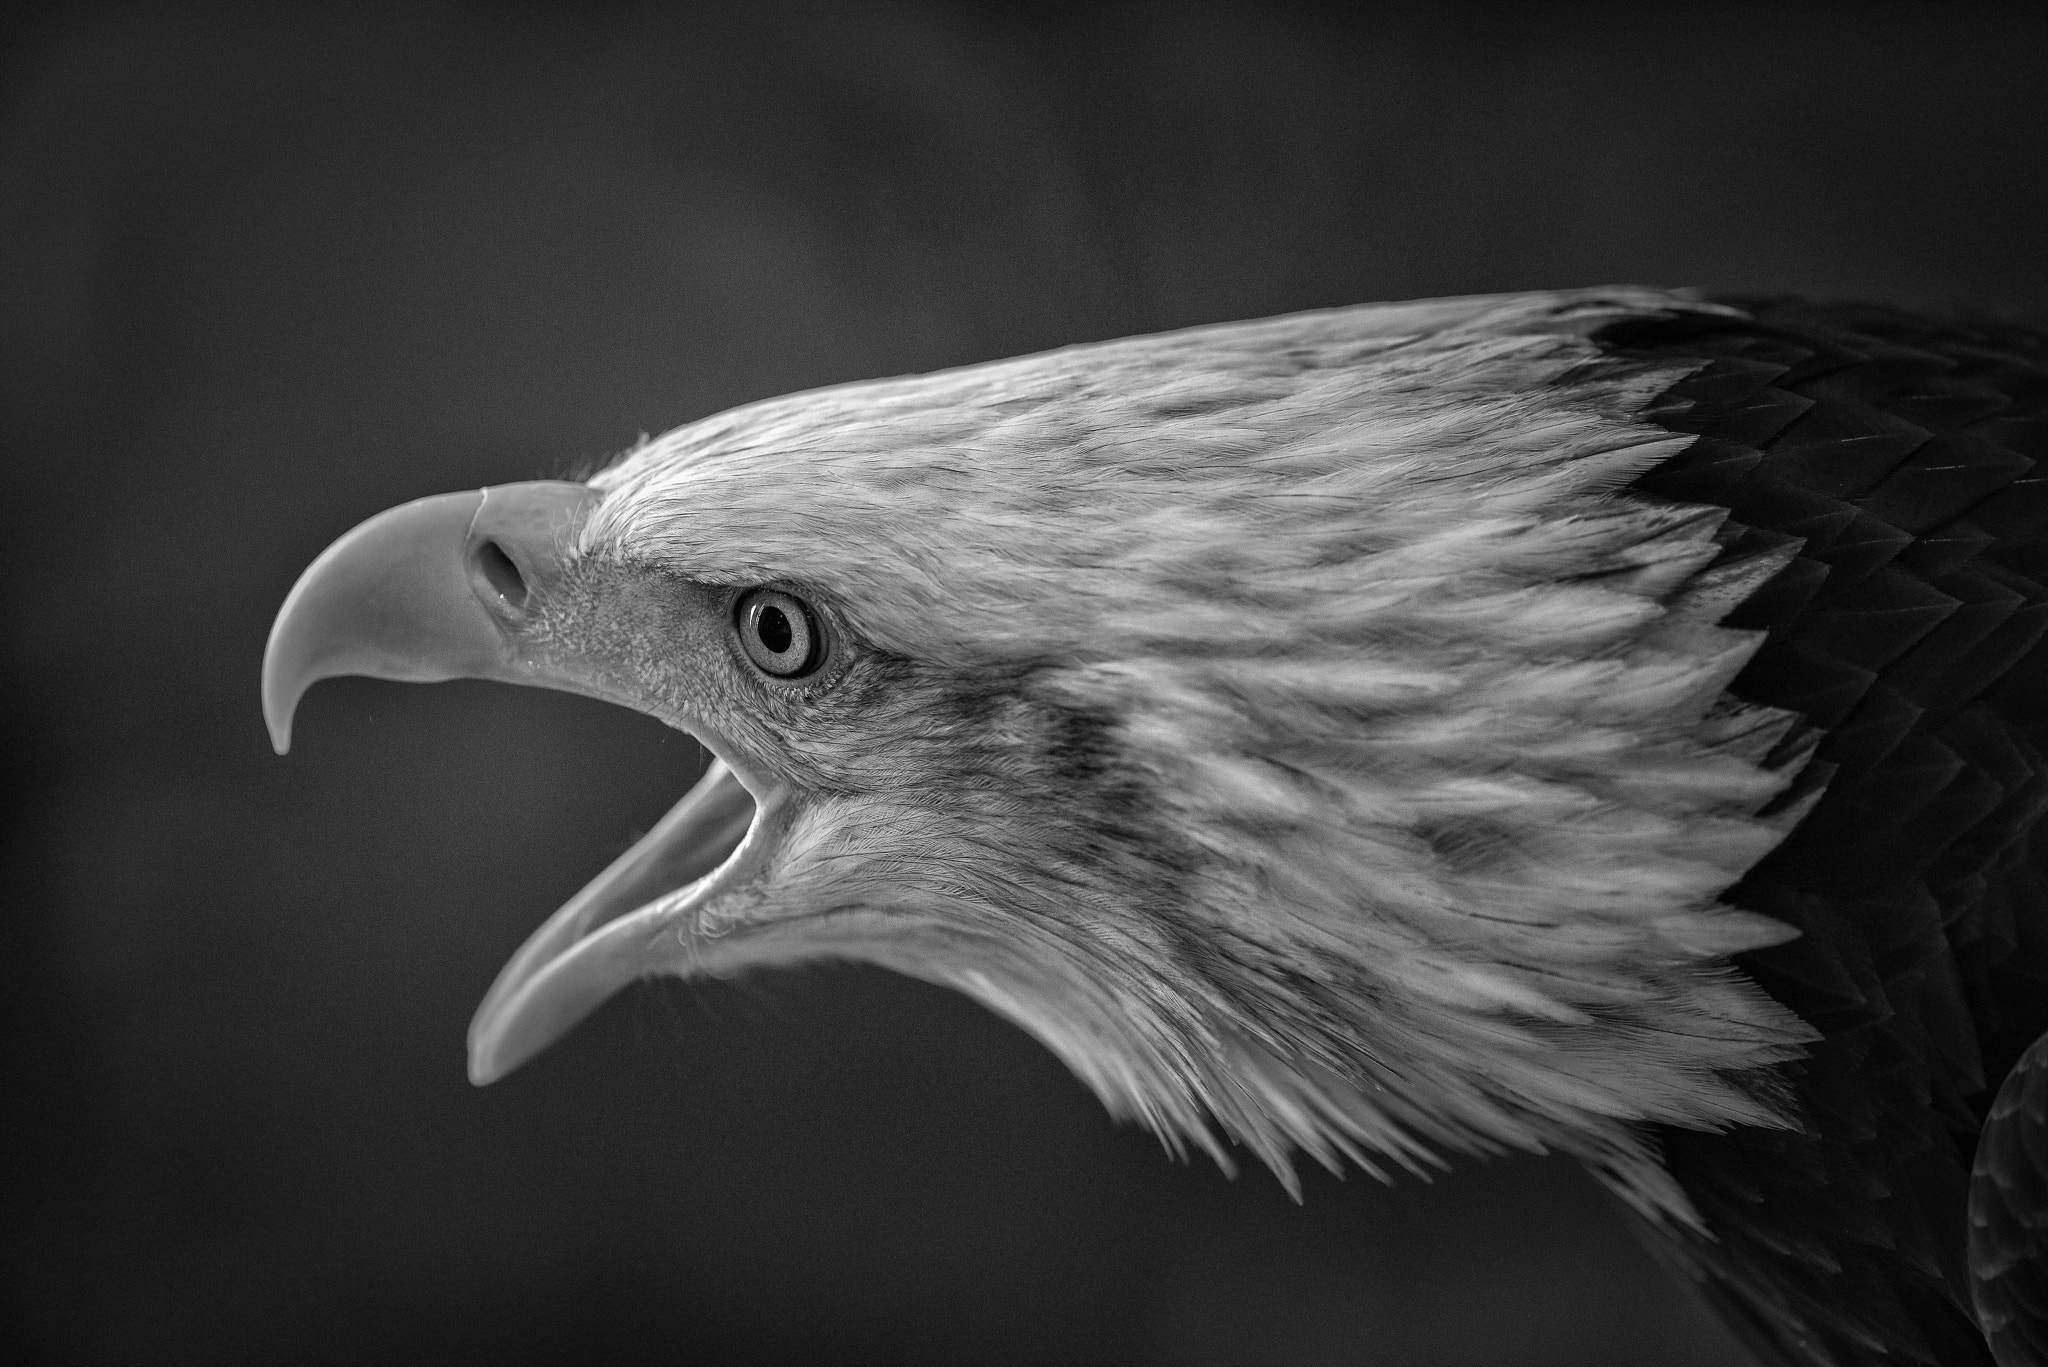 AF-S Nikkor 300mm f/2.8D IF-ED II sample photo. The bald eagle photography